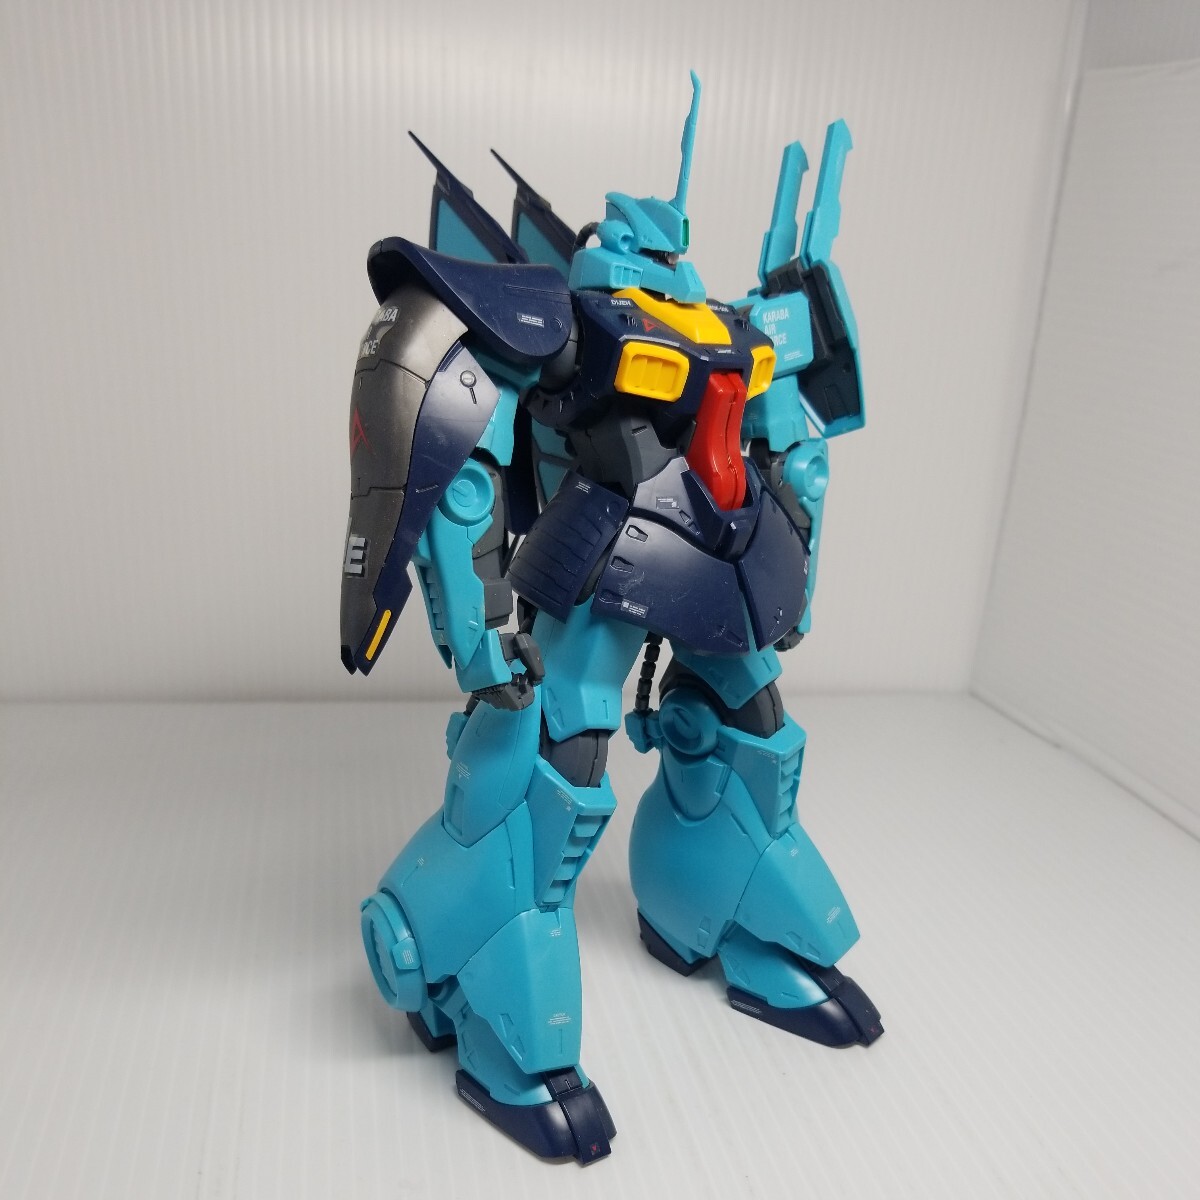 D-200g 5/15 REtije Gundam включение в покупку возможно gun pra Junk 